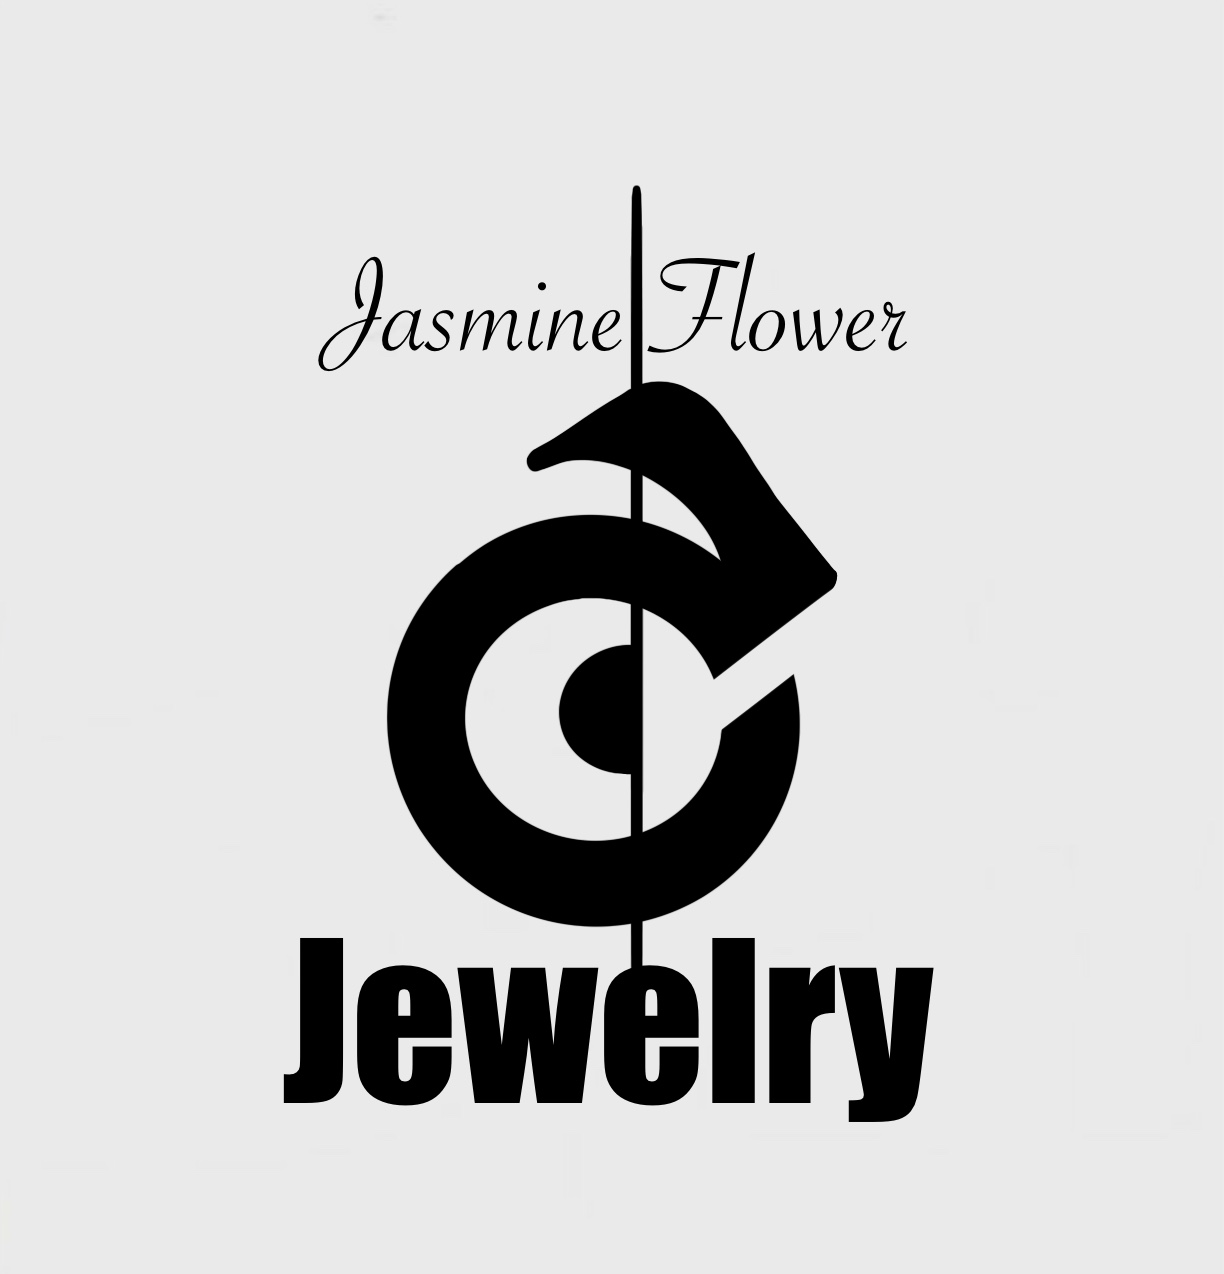 Jasmine jewelry